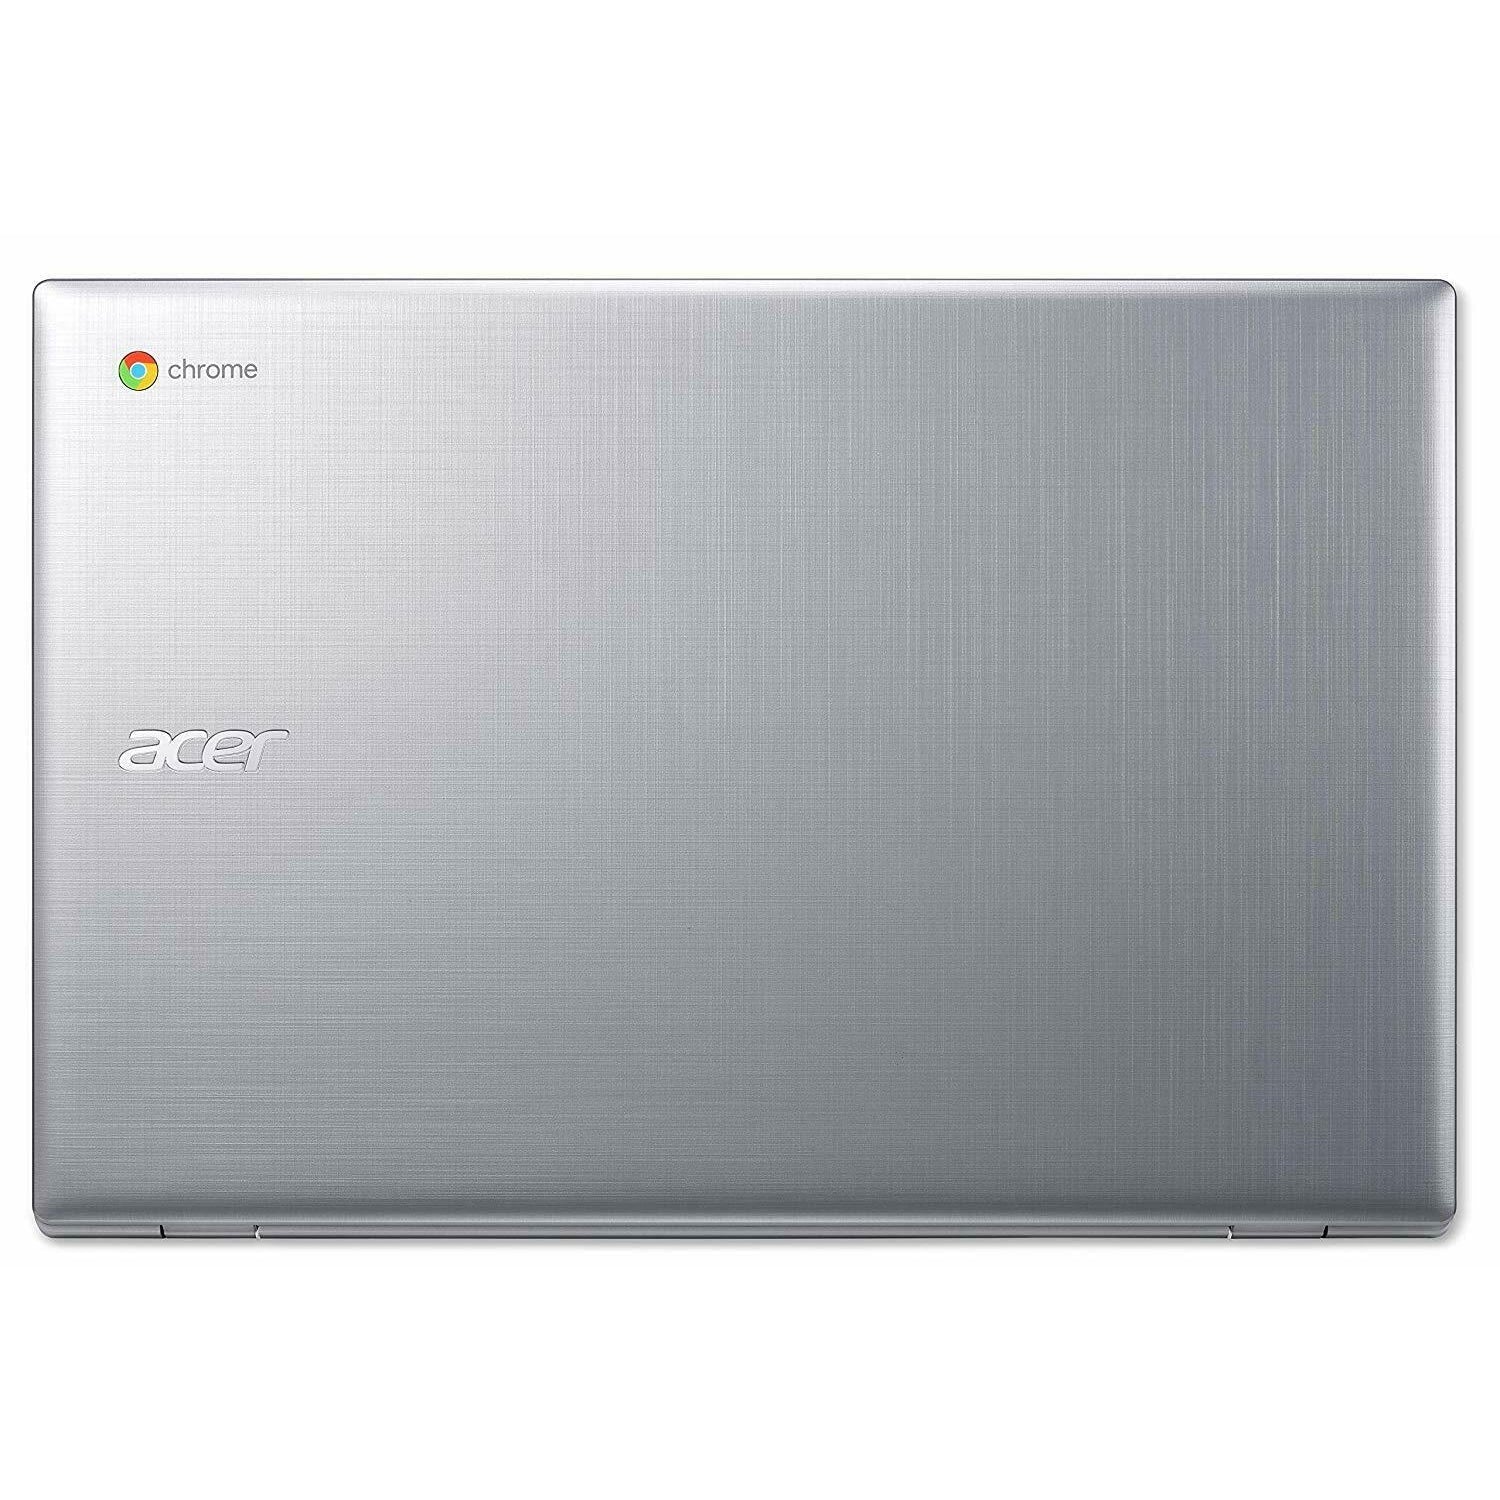 Acer CB315-2H-66VC, AMD A6-9220C, 4GB RAM, 64GB HDD, 15.6" Silver (NX.H8SEK.003) - New